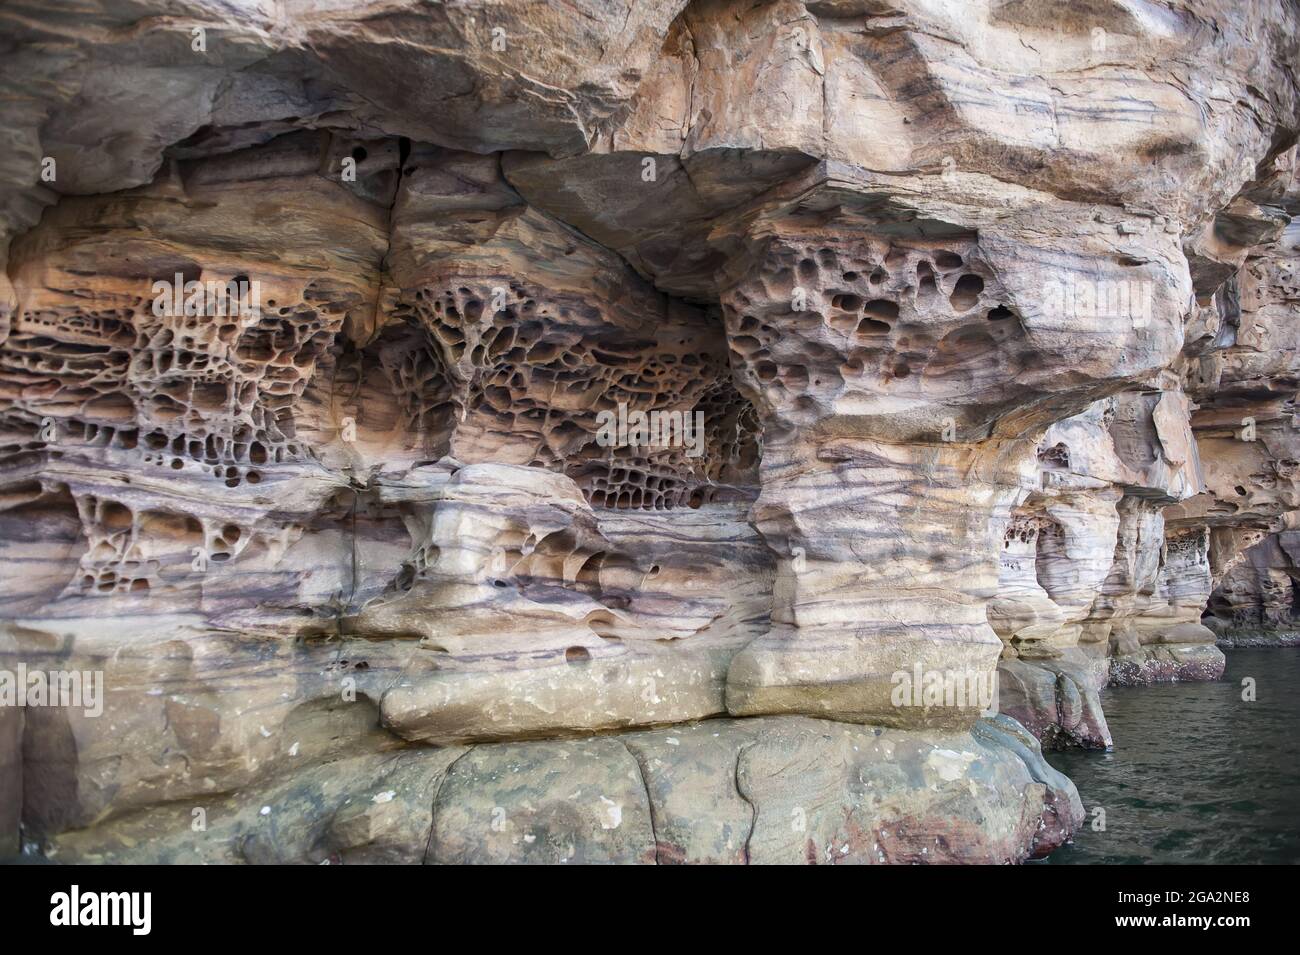 Primo piano delle intricate formazioni rocciose di tafoni nella scarpata di arenaria lungo le scogliere del fiume King George nella regione di Kimberley Foto Stock